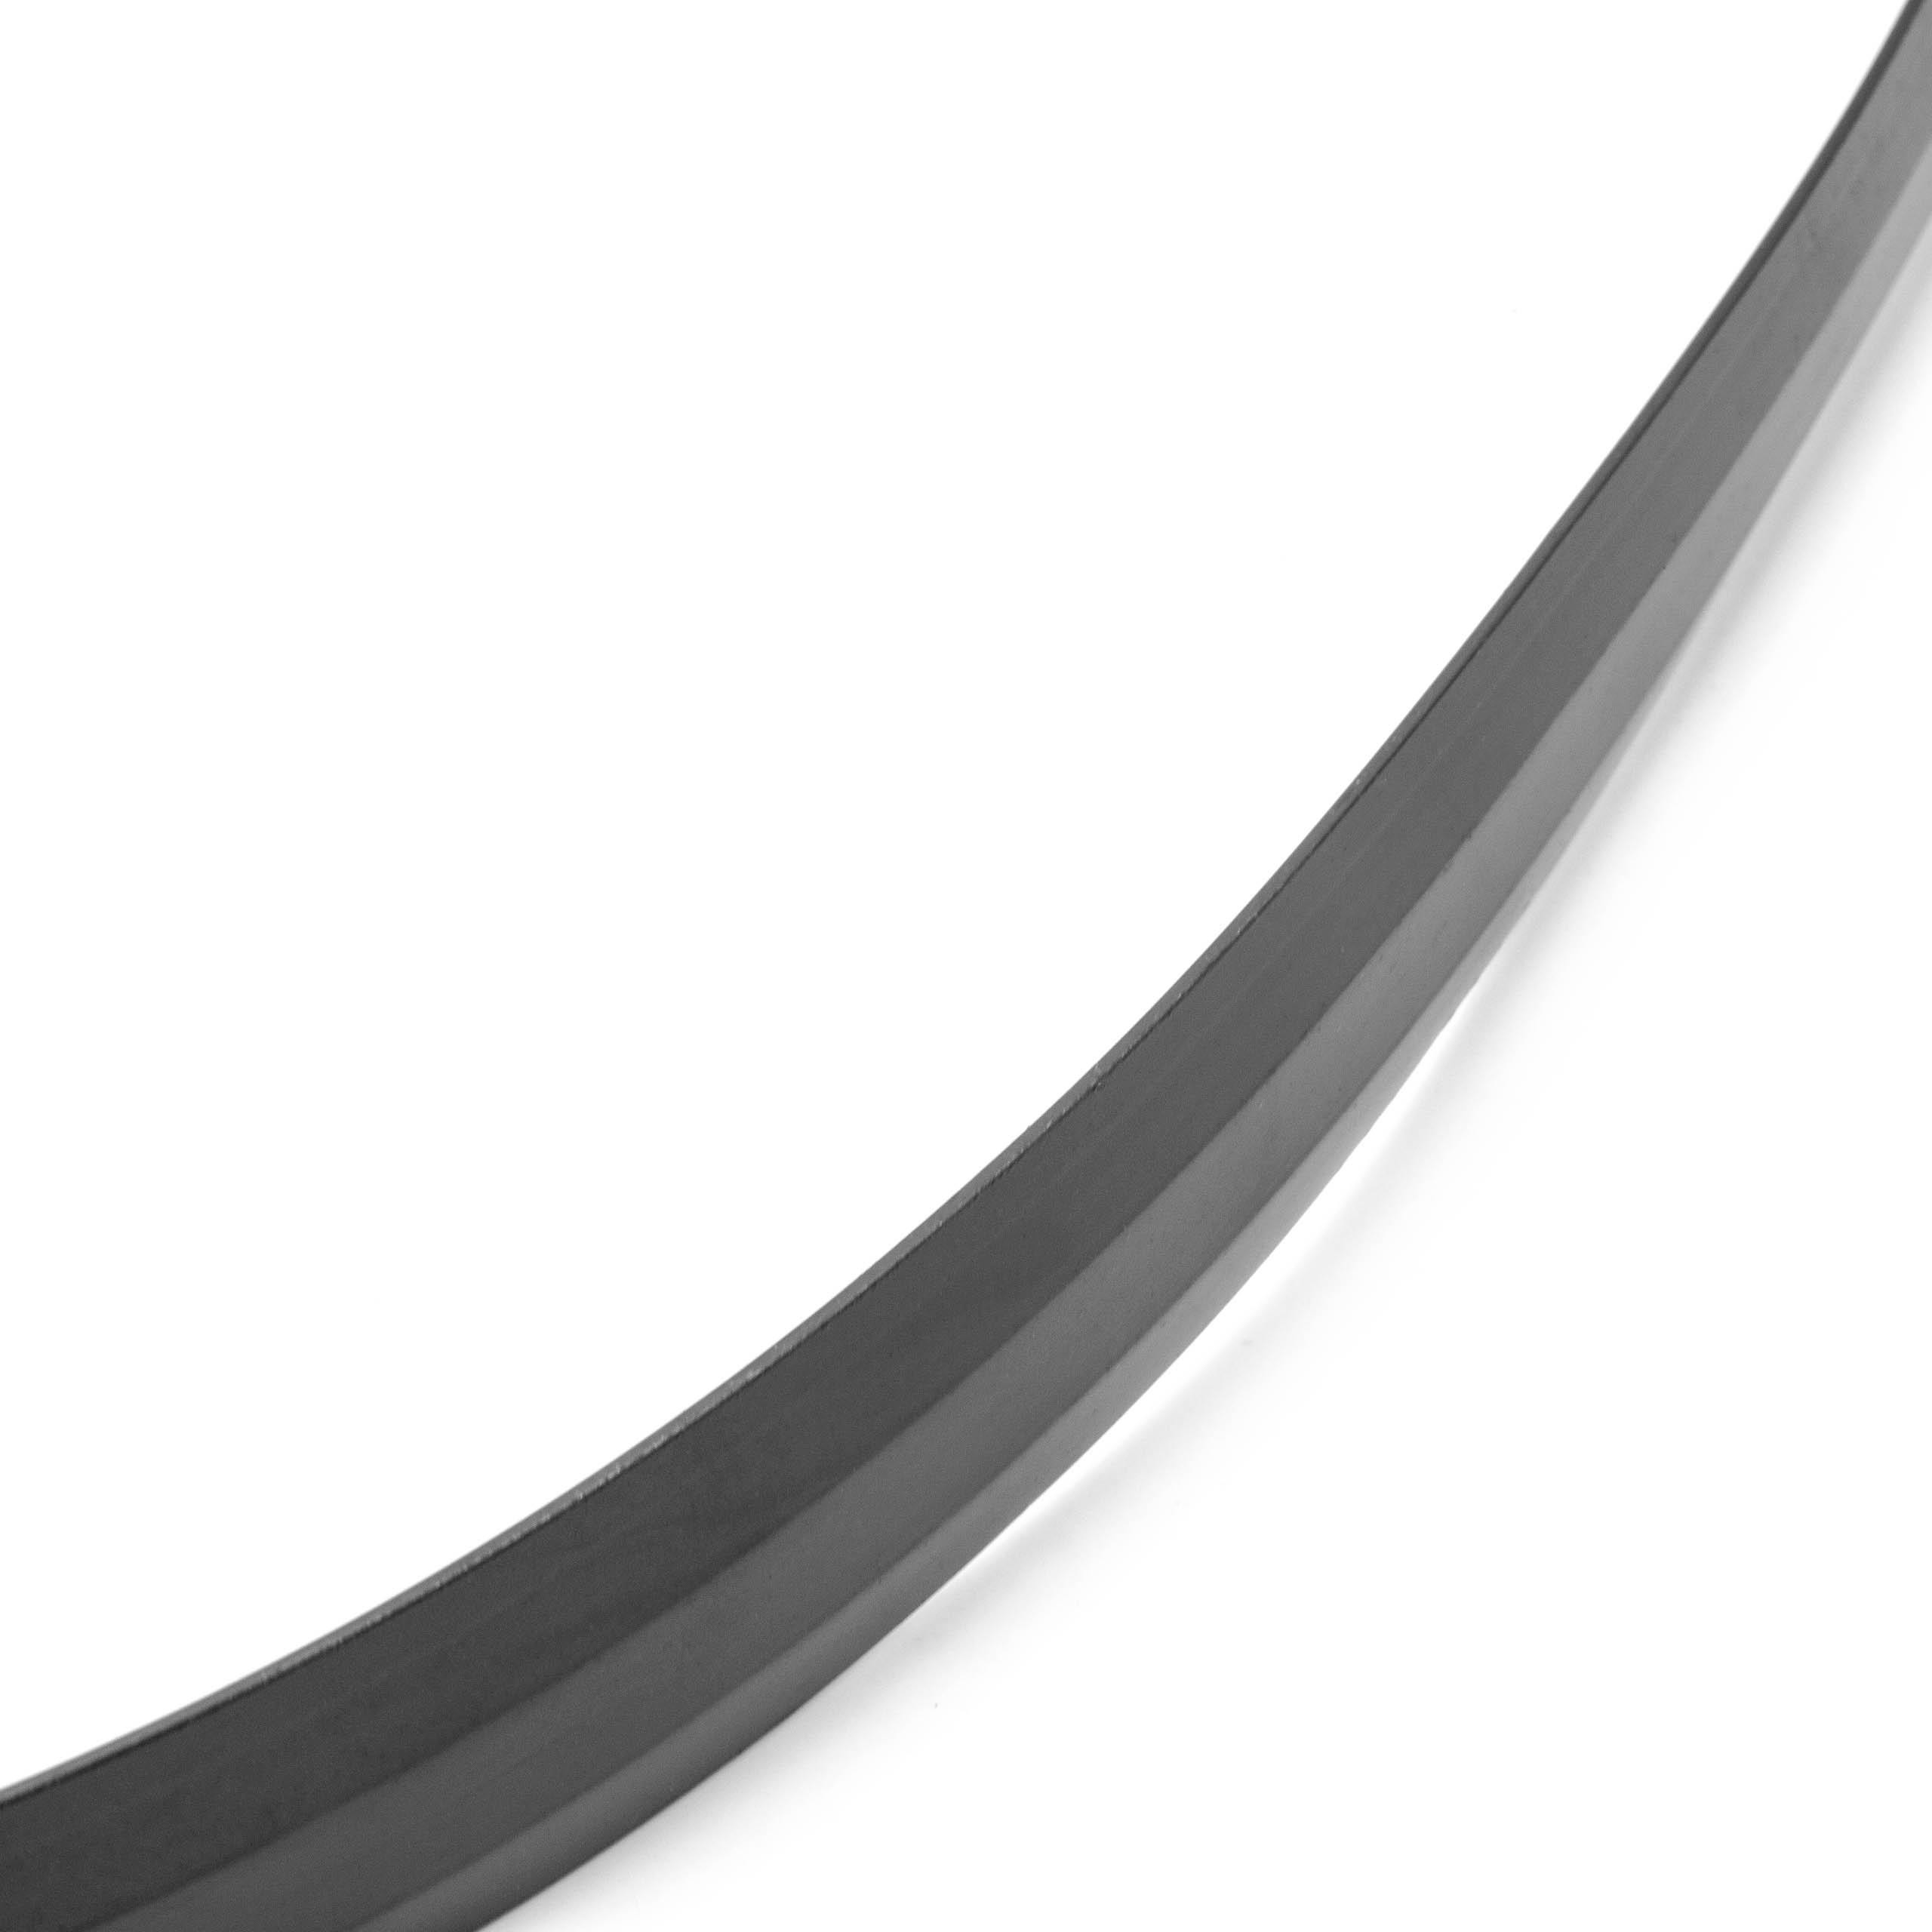 Begrenzungs-Streifen Magnet 4,5m passend für Neato Botvac, Xiaomi u.a.